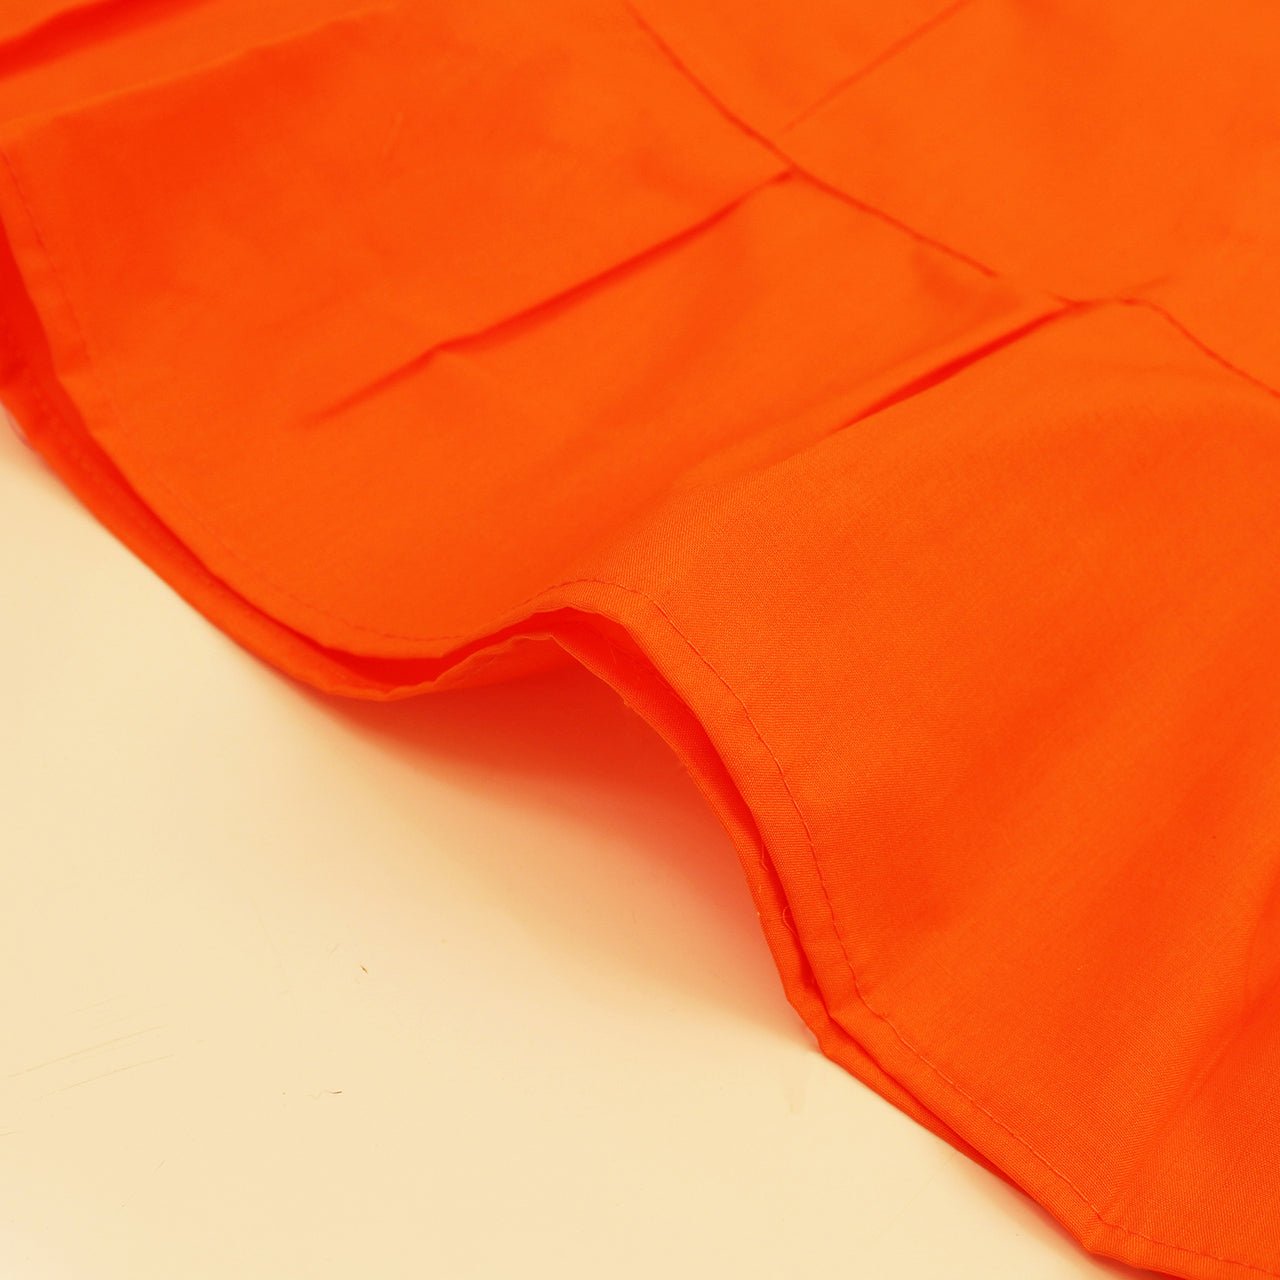 Dark Orange - Sari (Saree) Petticoat - Available in S, M, L & XL - Underskirts For Sari's